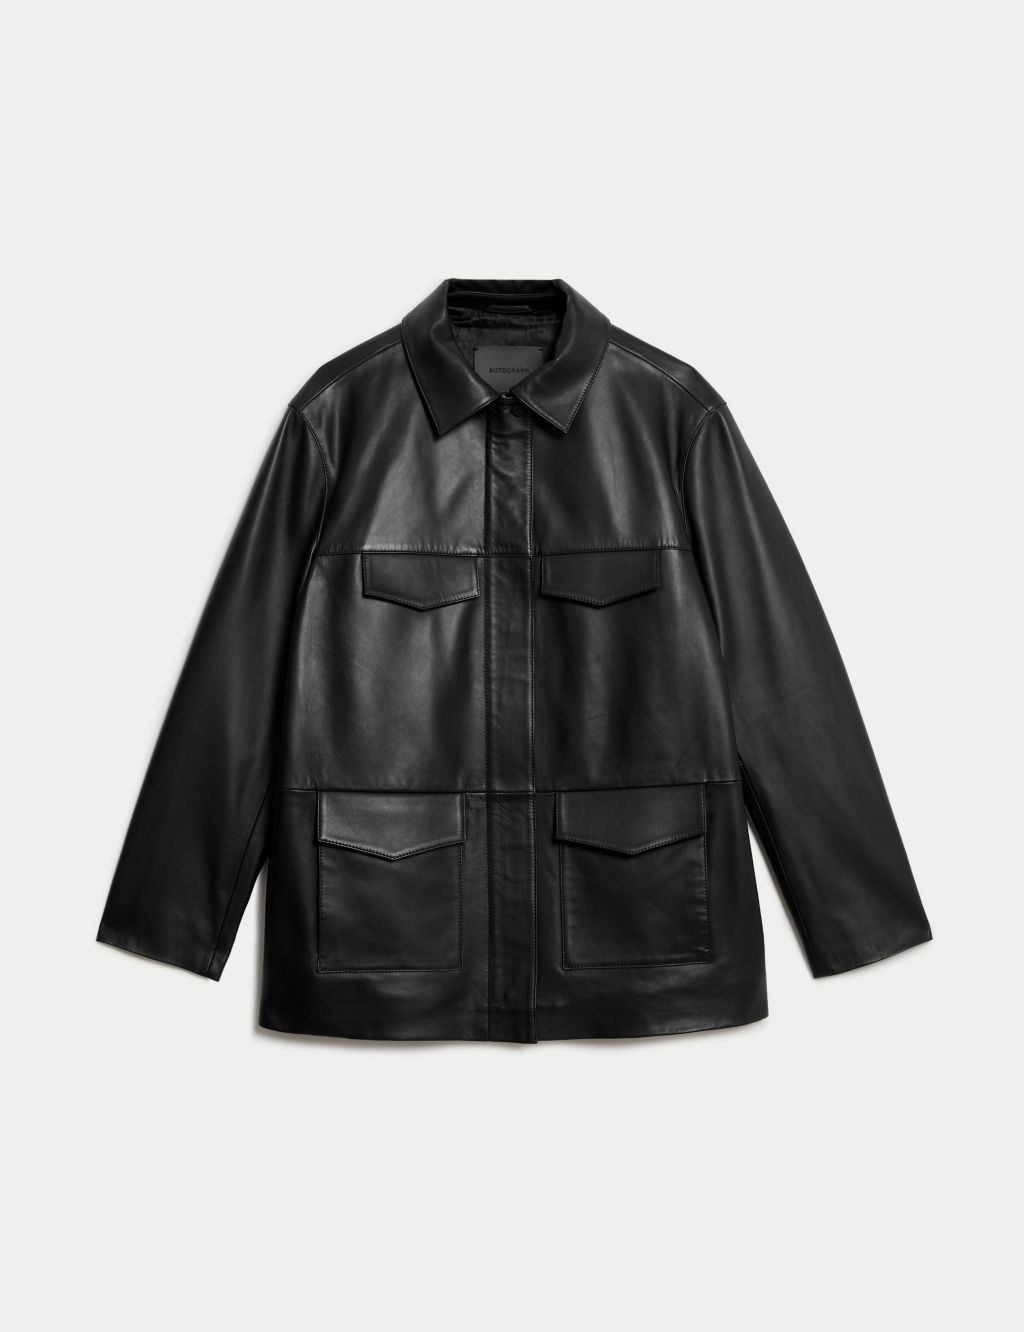 Leather Collared Utility Jacket image 1